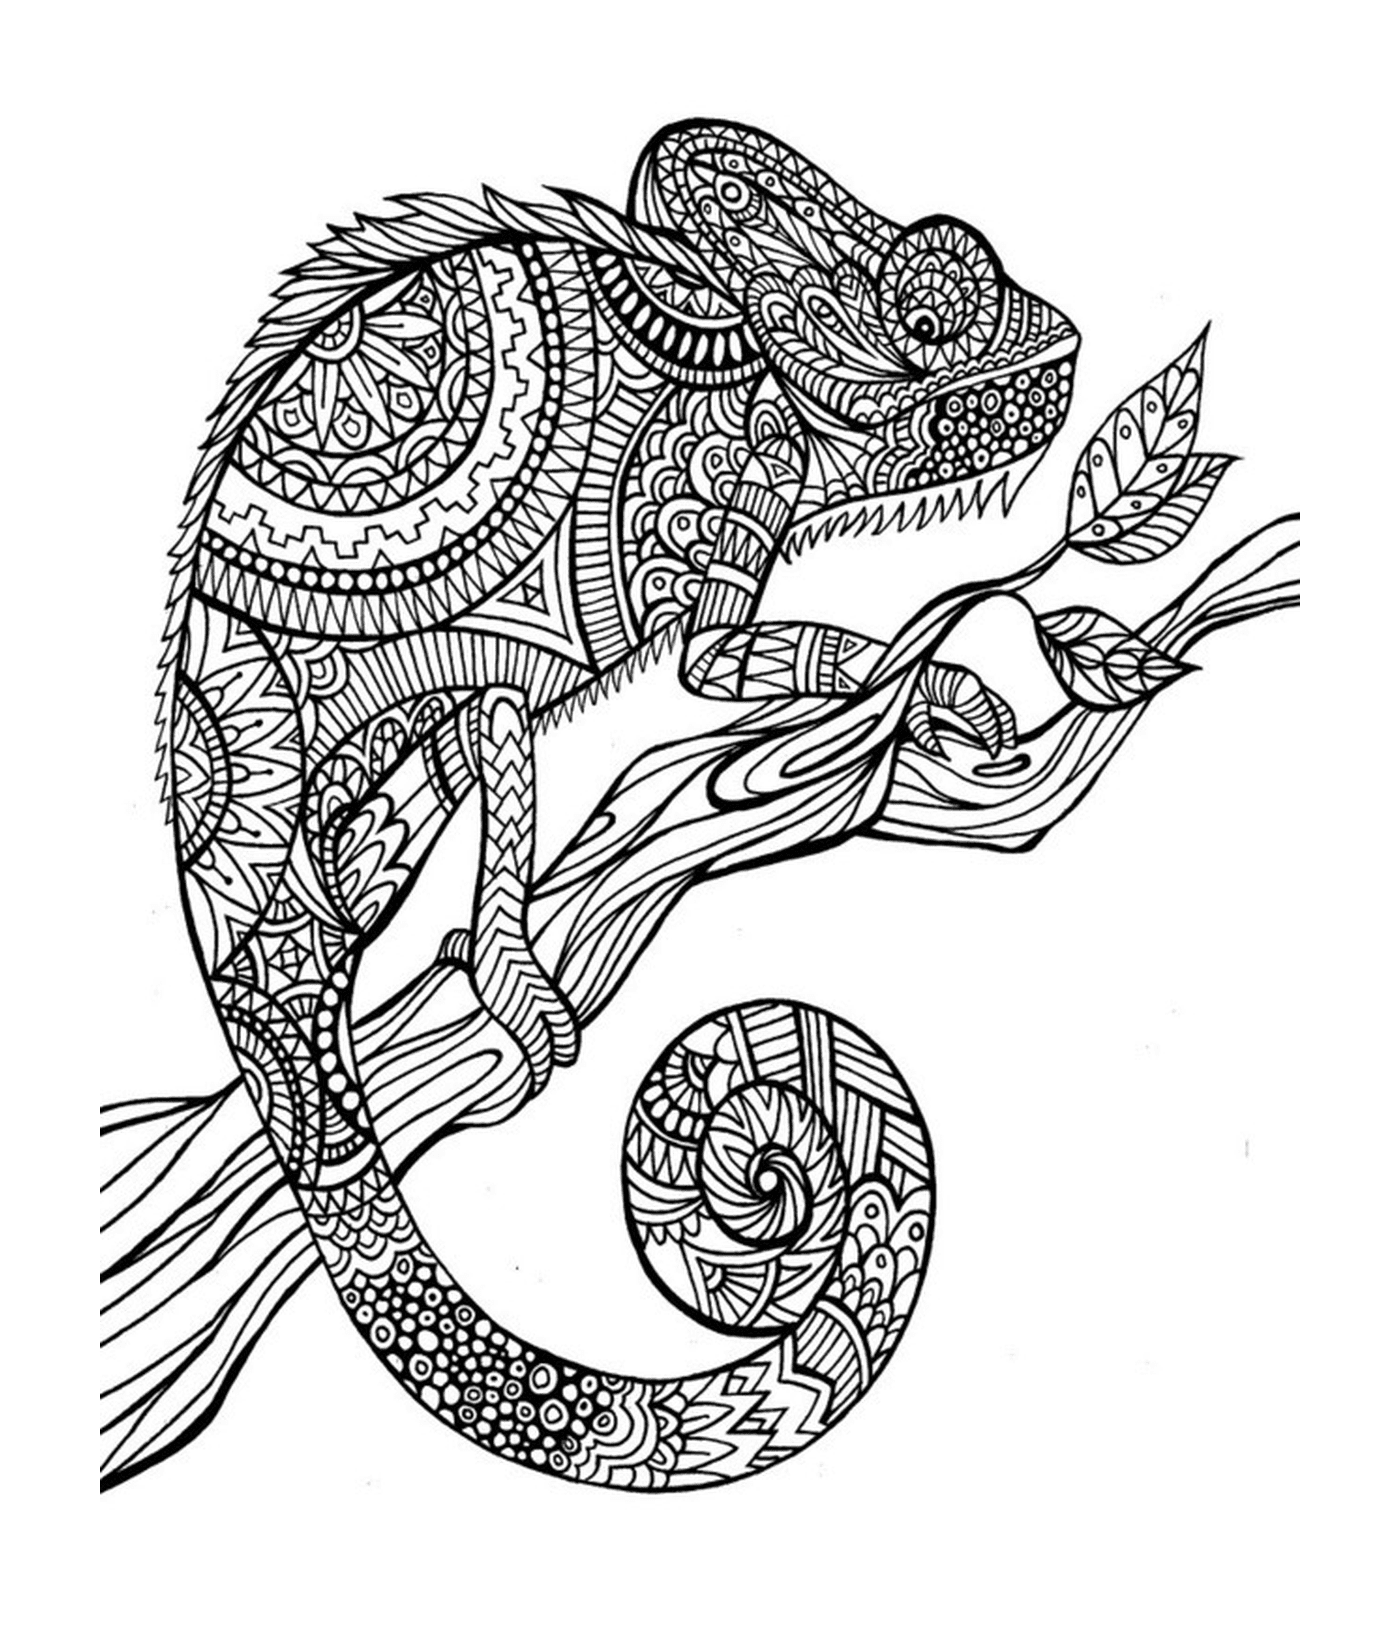  a chameleon 